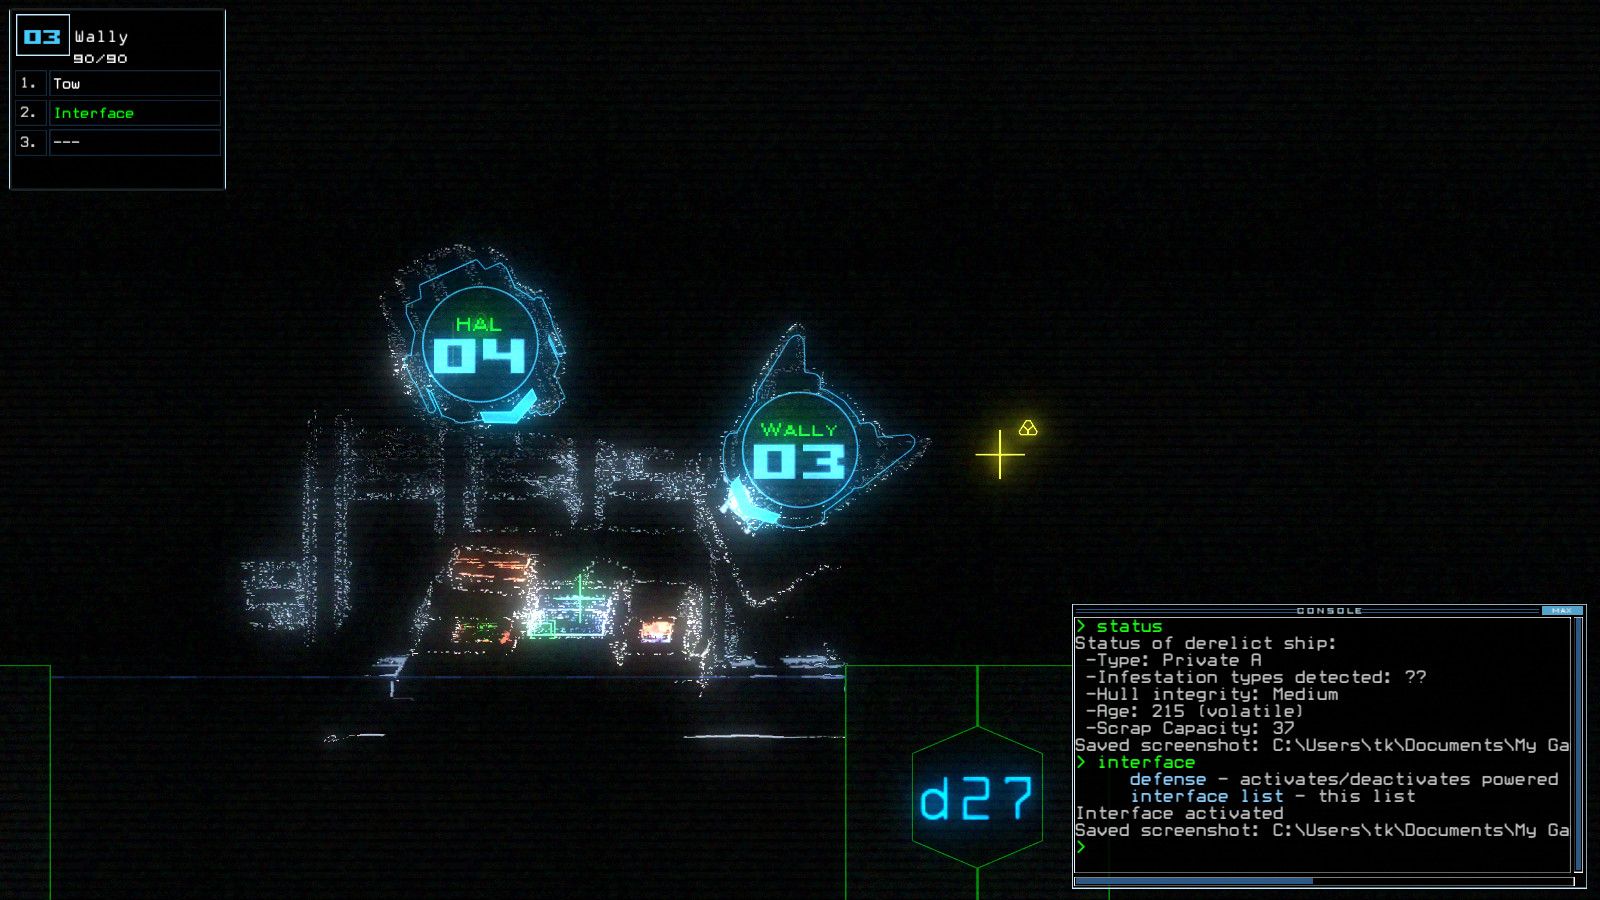 Снимок экрана уникального графического стиля и интерфейса командной строки Даскера.<br>